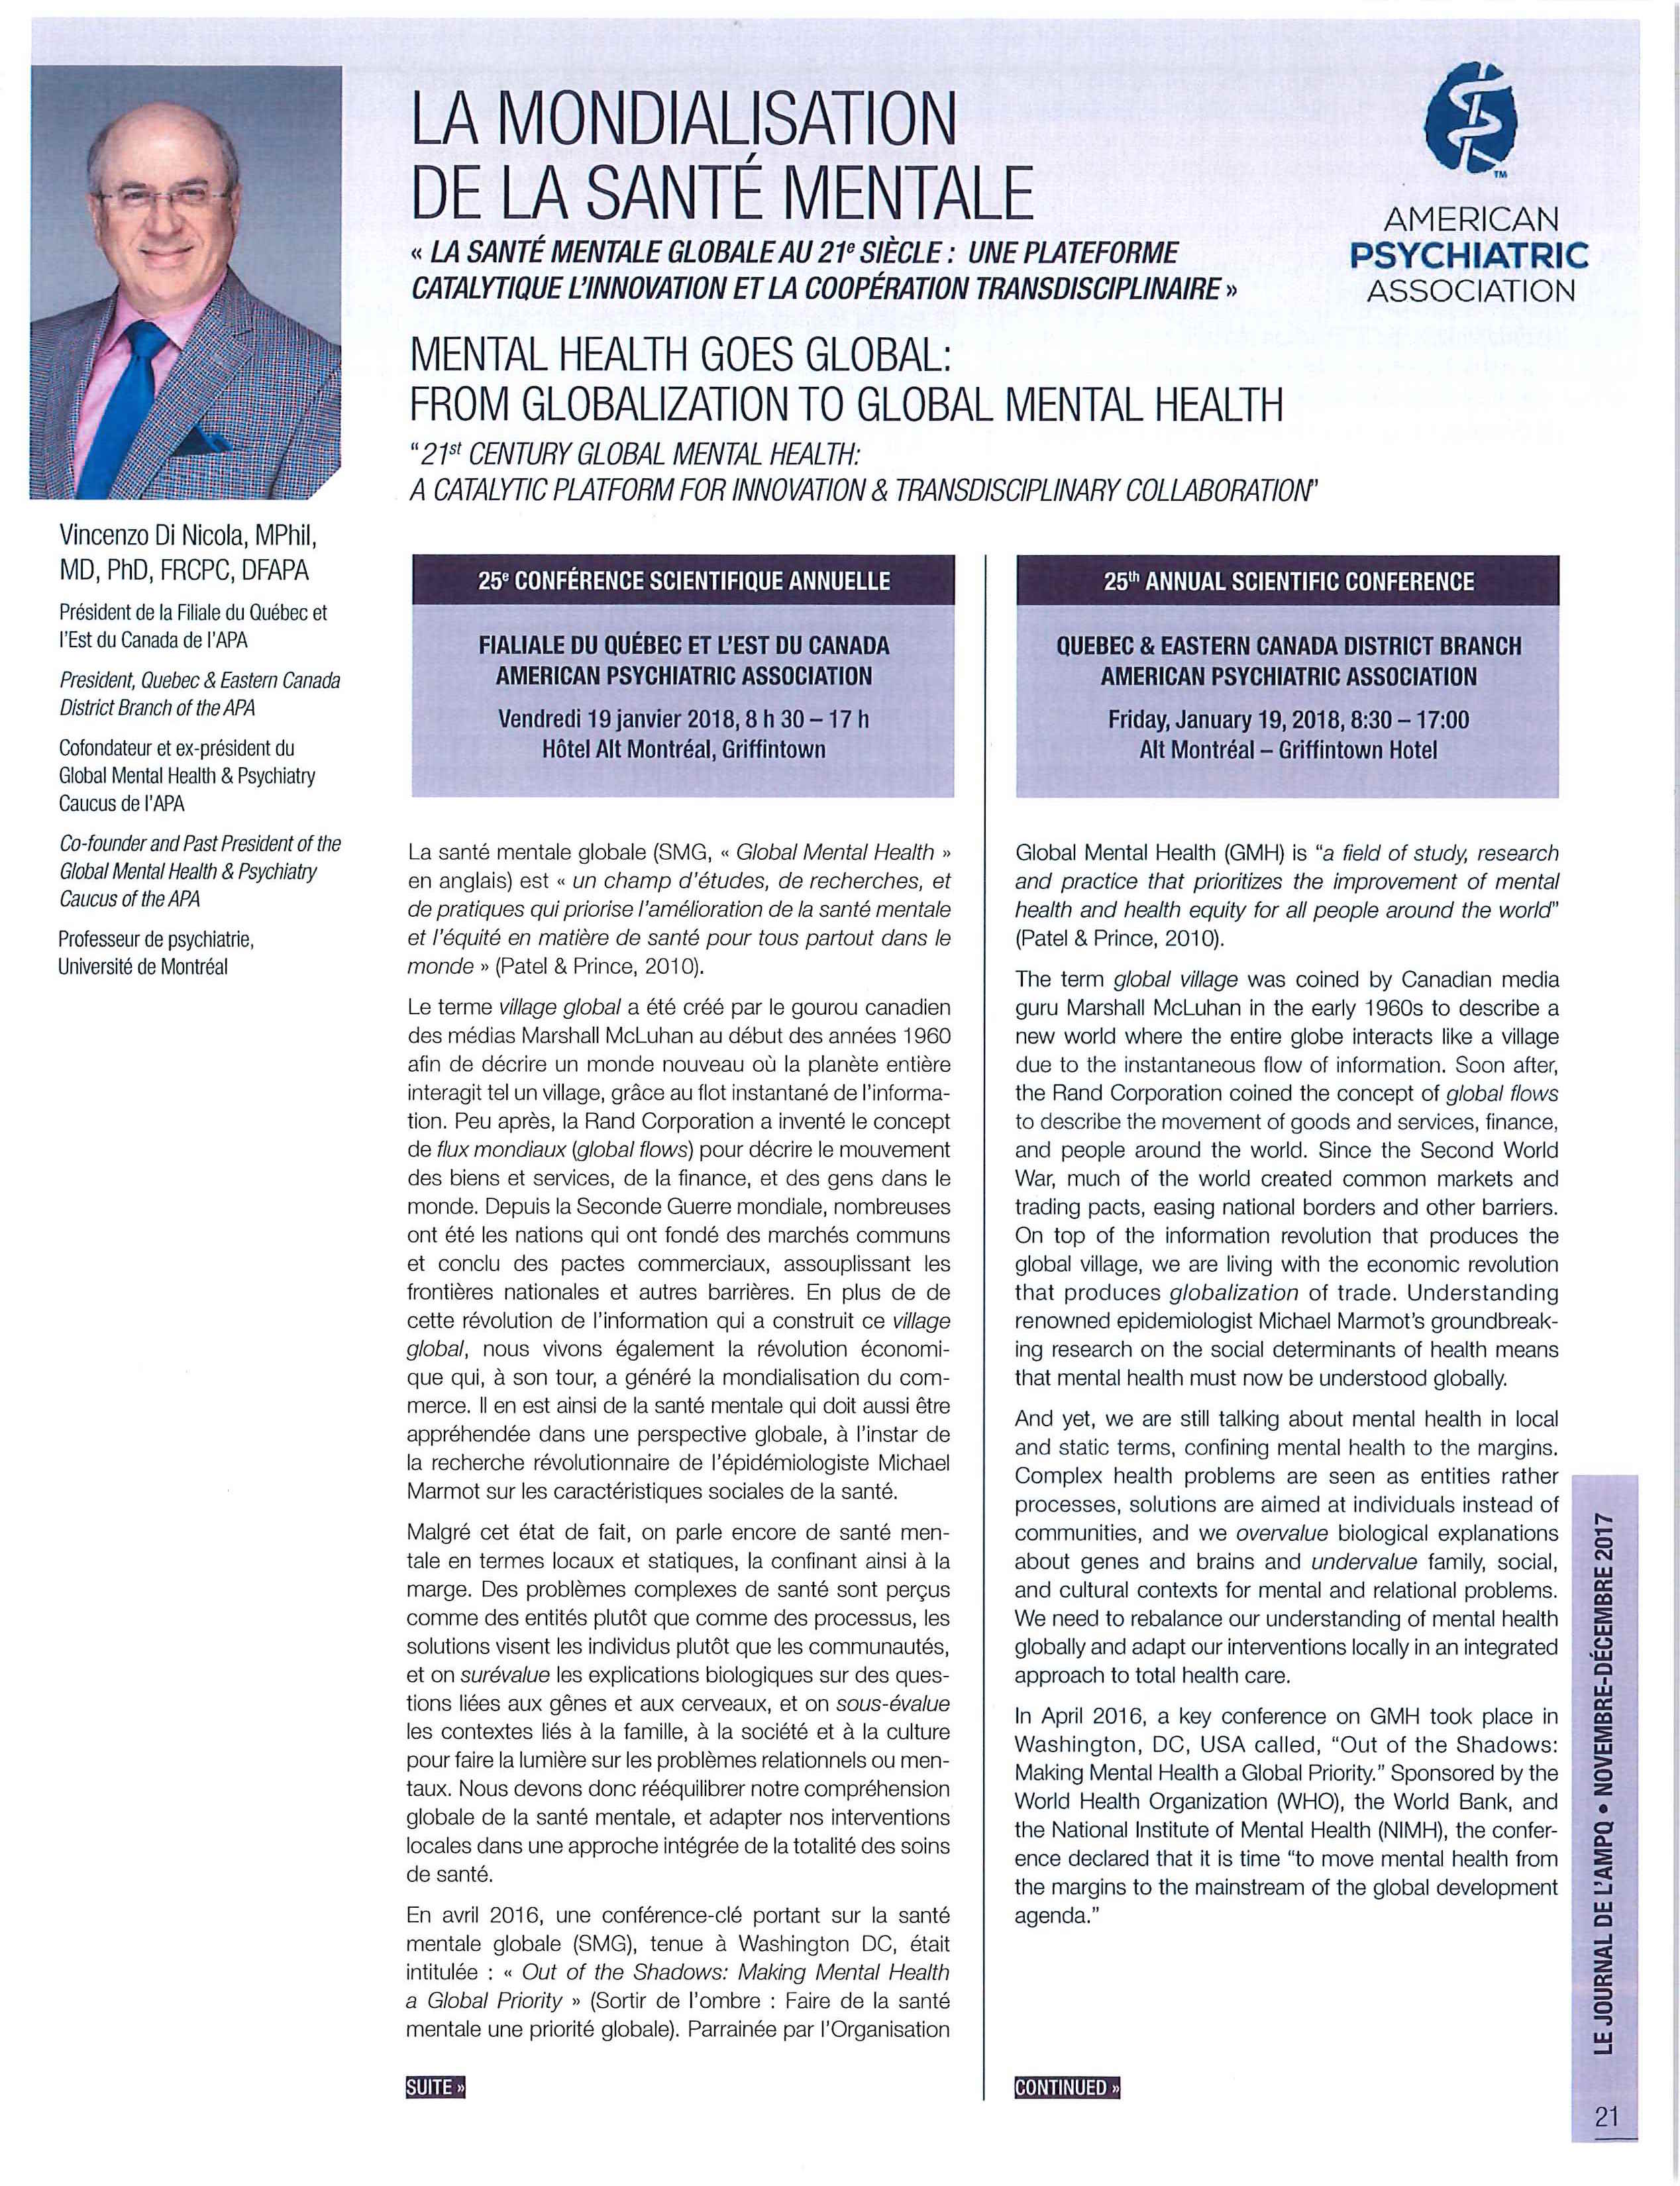 La mondialisation de la santé mentale - Le Journal de l'AMPQ - nov-déc 2017